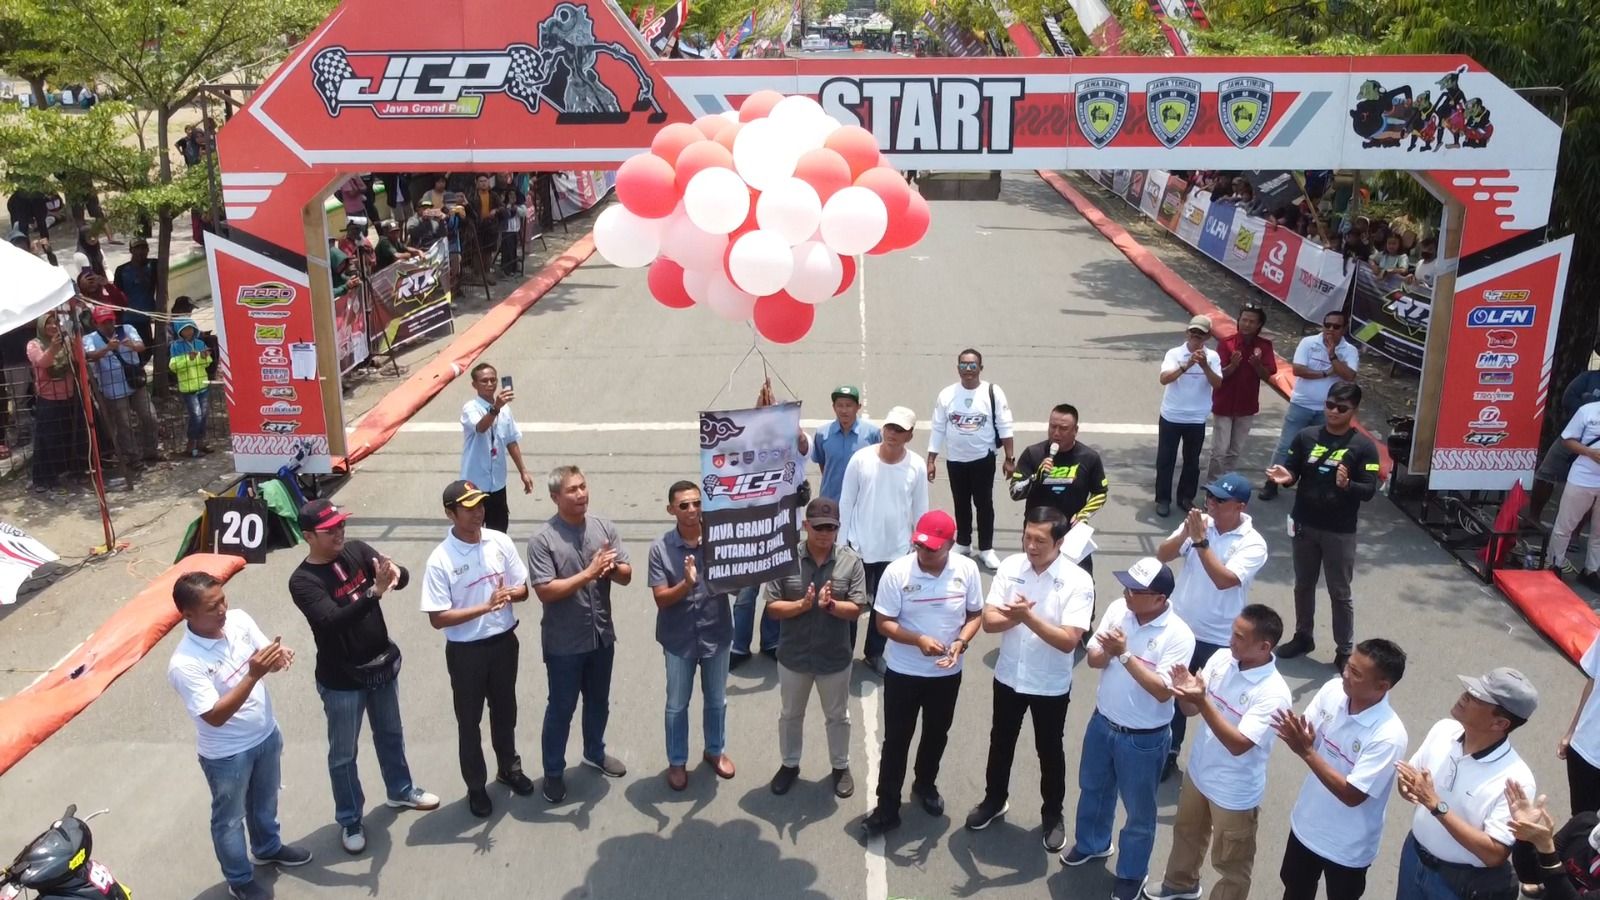 Kapolres Tegal AKBP Mochammad Sajarod Zakun melakukan penerbangan balon sebagai tanda dibukanya Road Race Java Grand Prix Seri ke-3 Piala Kapolres Tegal 2023.